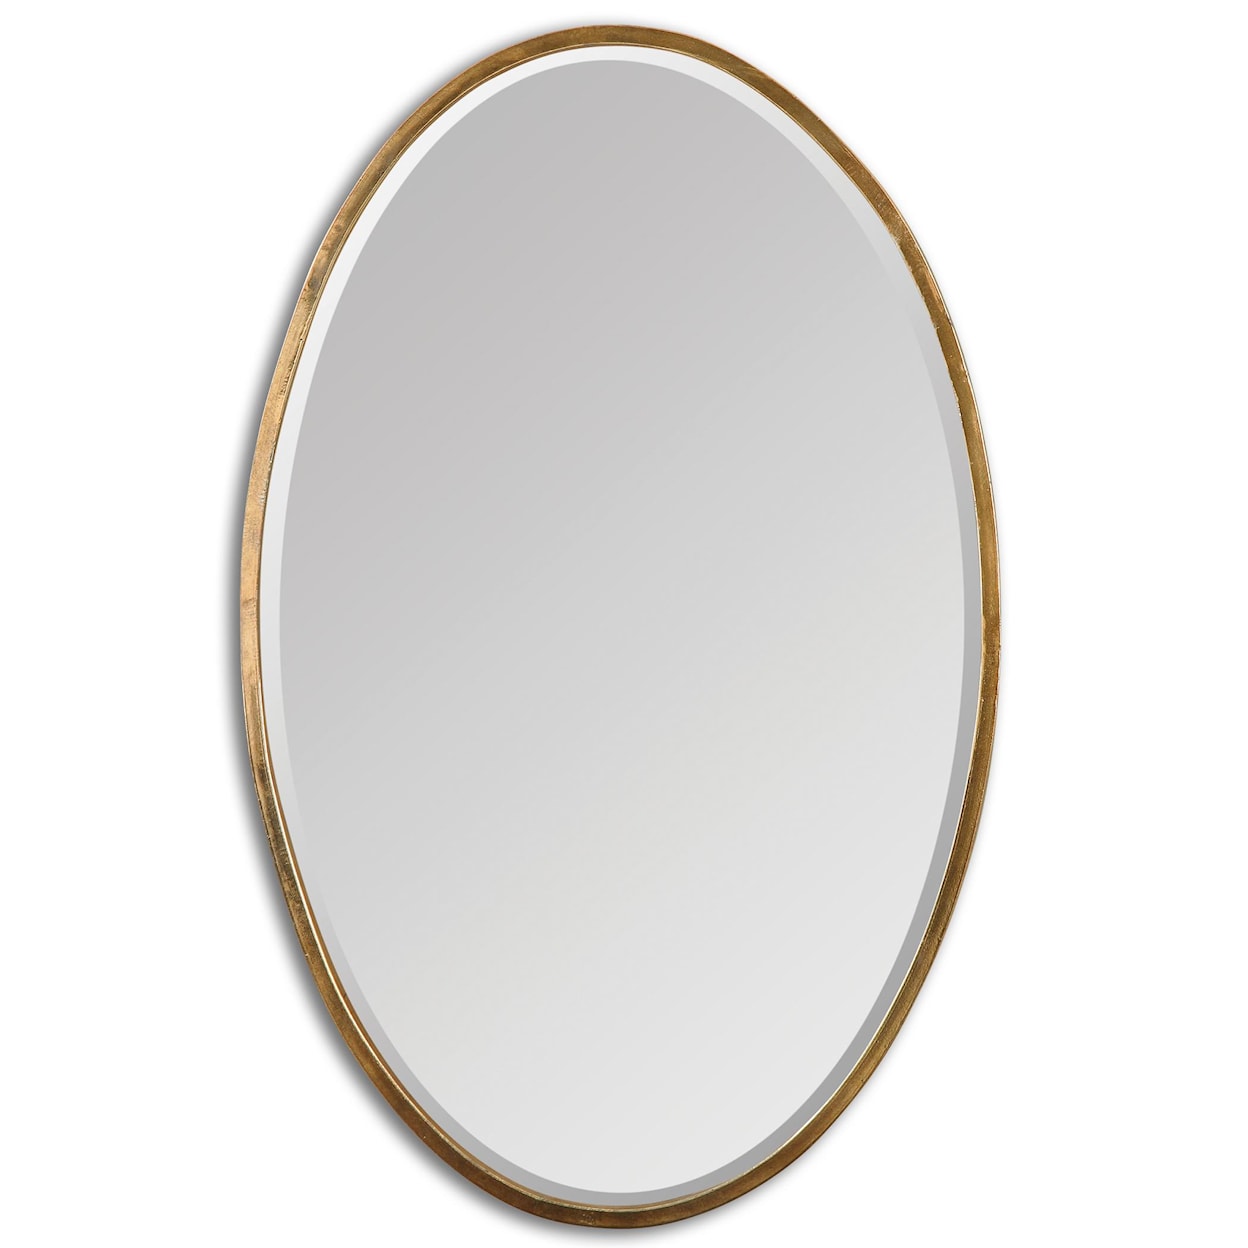 Uttermost Mirrors - Oval Herleva Gold Oval Mirror